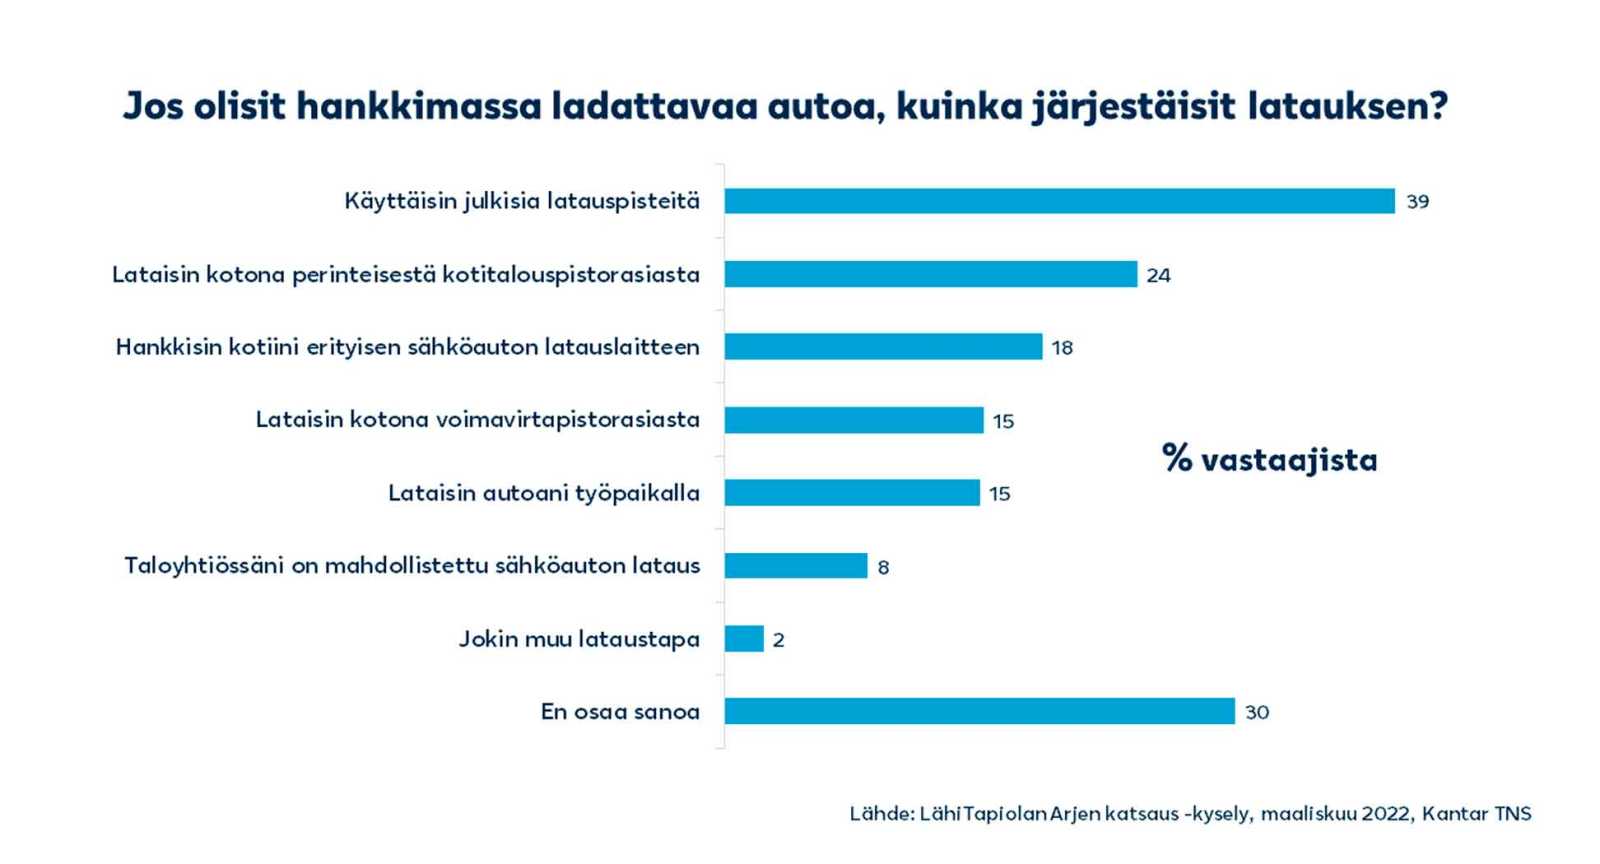 Kuvassa on avattu hieman tarkemmin Arjen katsaus -kyselyn tuloksia siitä, kuinka suomalaiset arvelevat järjestävänsä auton latauksen. Esimerkiksi 15 prosenttia vastaajista uskoo lataavansa autoa työpaikalla.